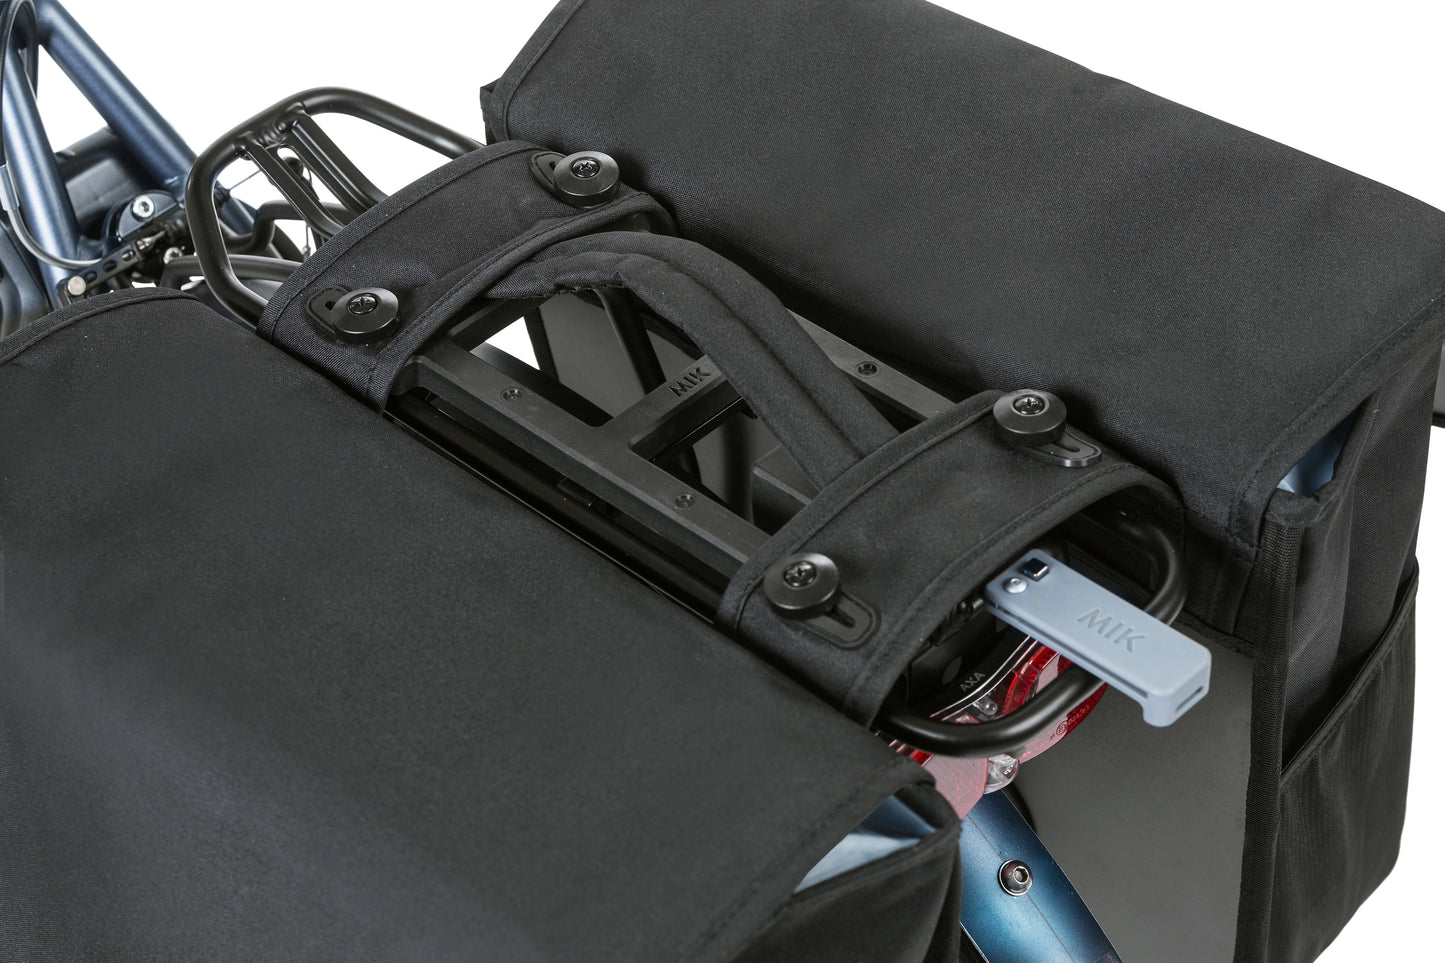 Basil GO-Double Bag Mik, bolsa de bicicleta doble, negro, 32L, adecuado para portadores de portadores de sistemas MIK